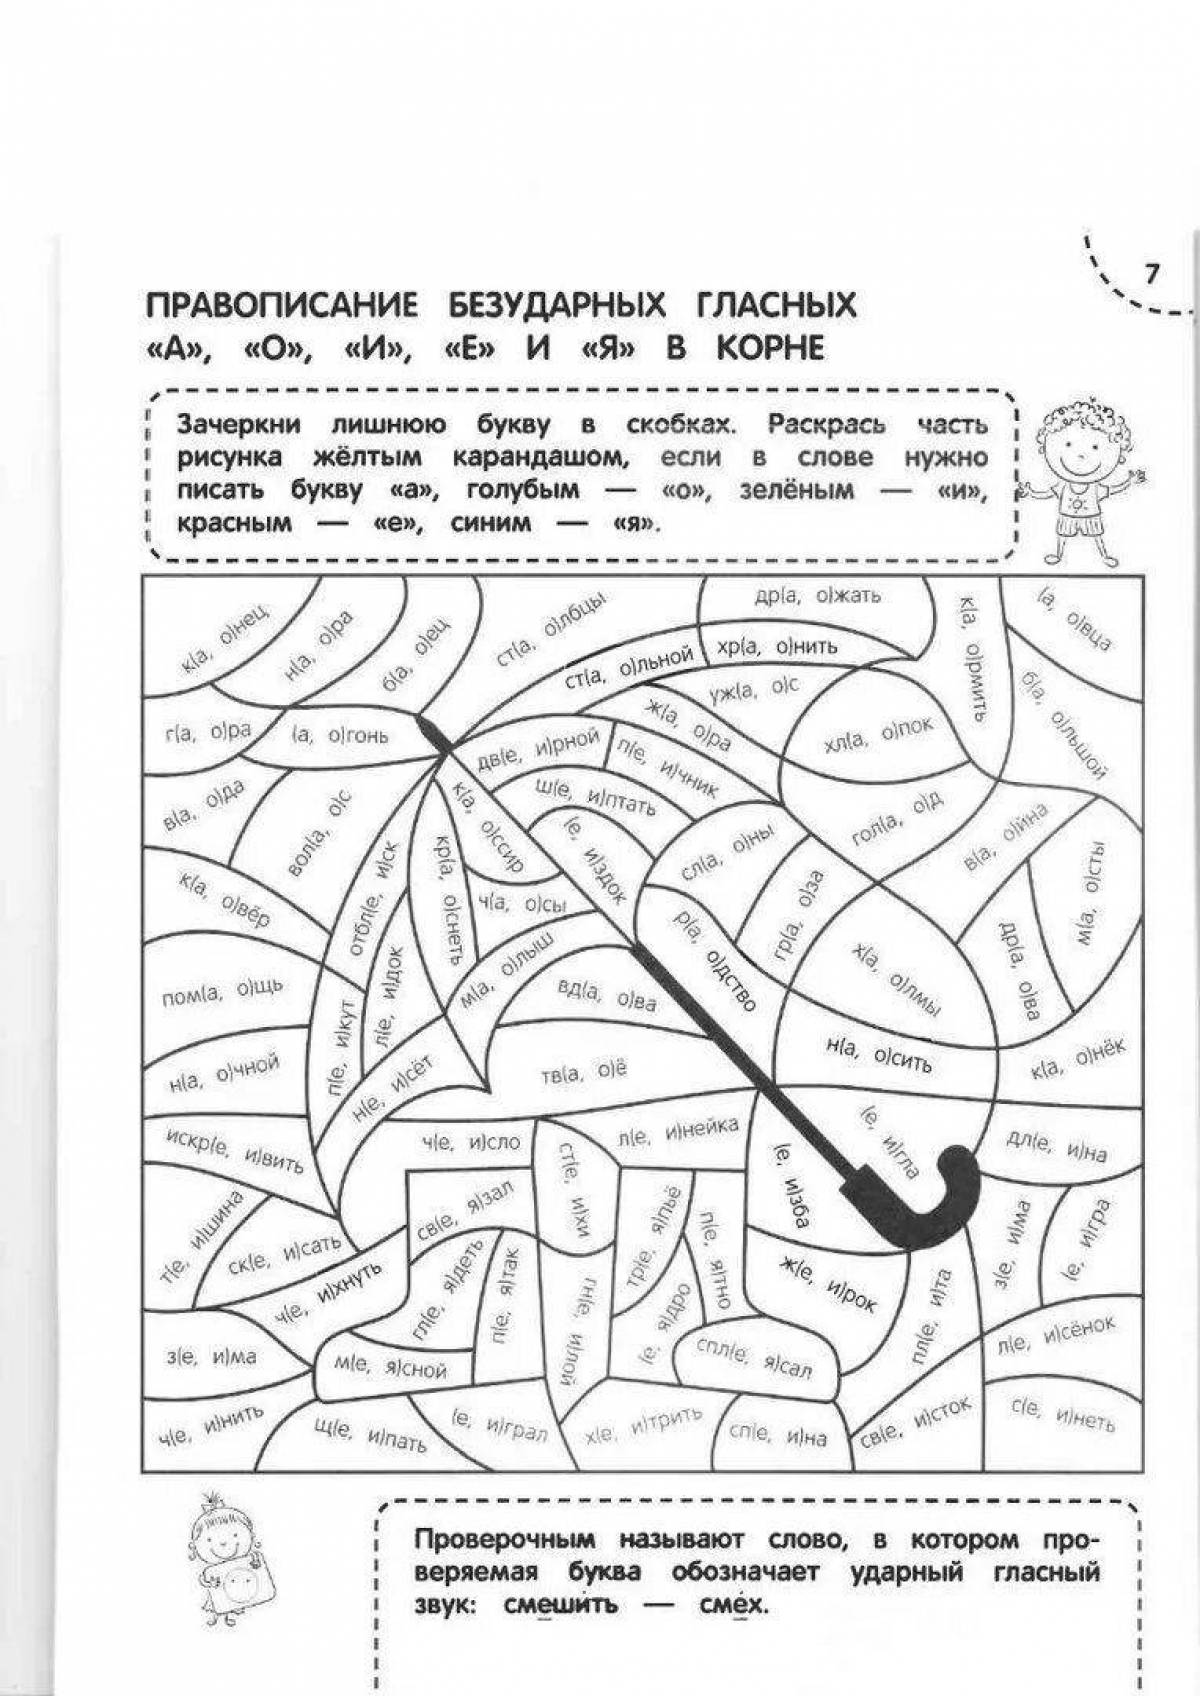 Забавная раскраска парных согласных по русскому языку для 2 класса